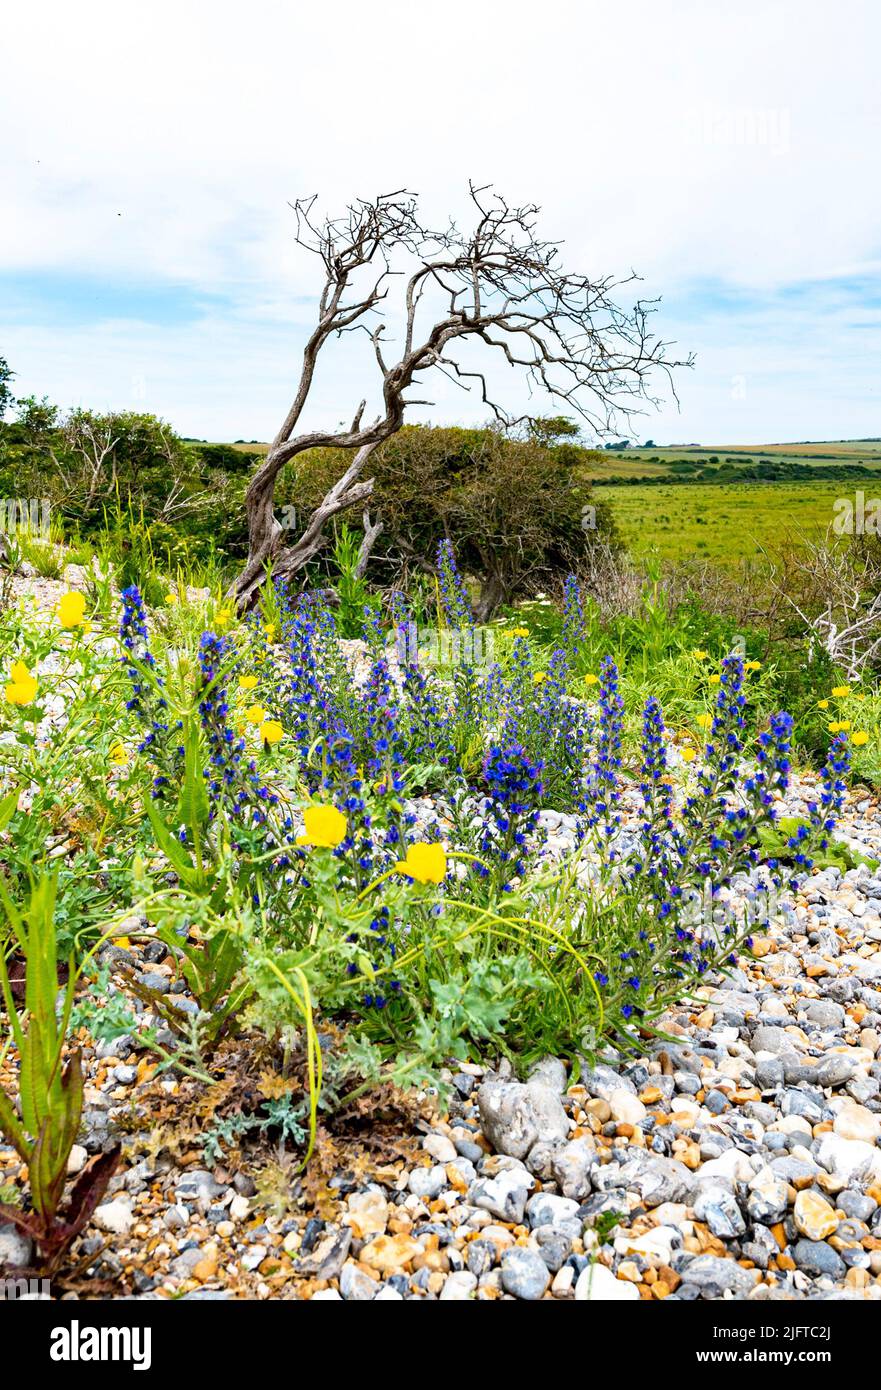 Cuckmere Haven & Seaford East Sussex Inglaterra Reino Unido - Las flores de amapola amarilla (Glaucium flavum) y un pequeño árbol muerto Foto de stock